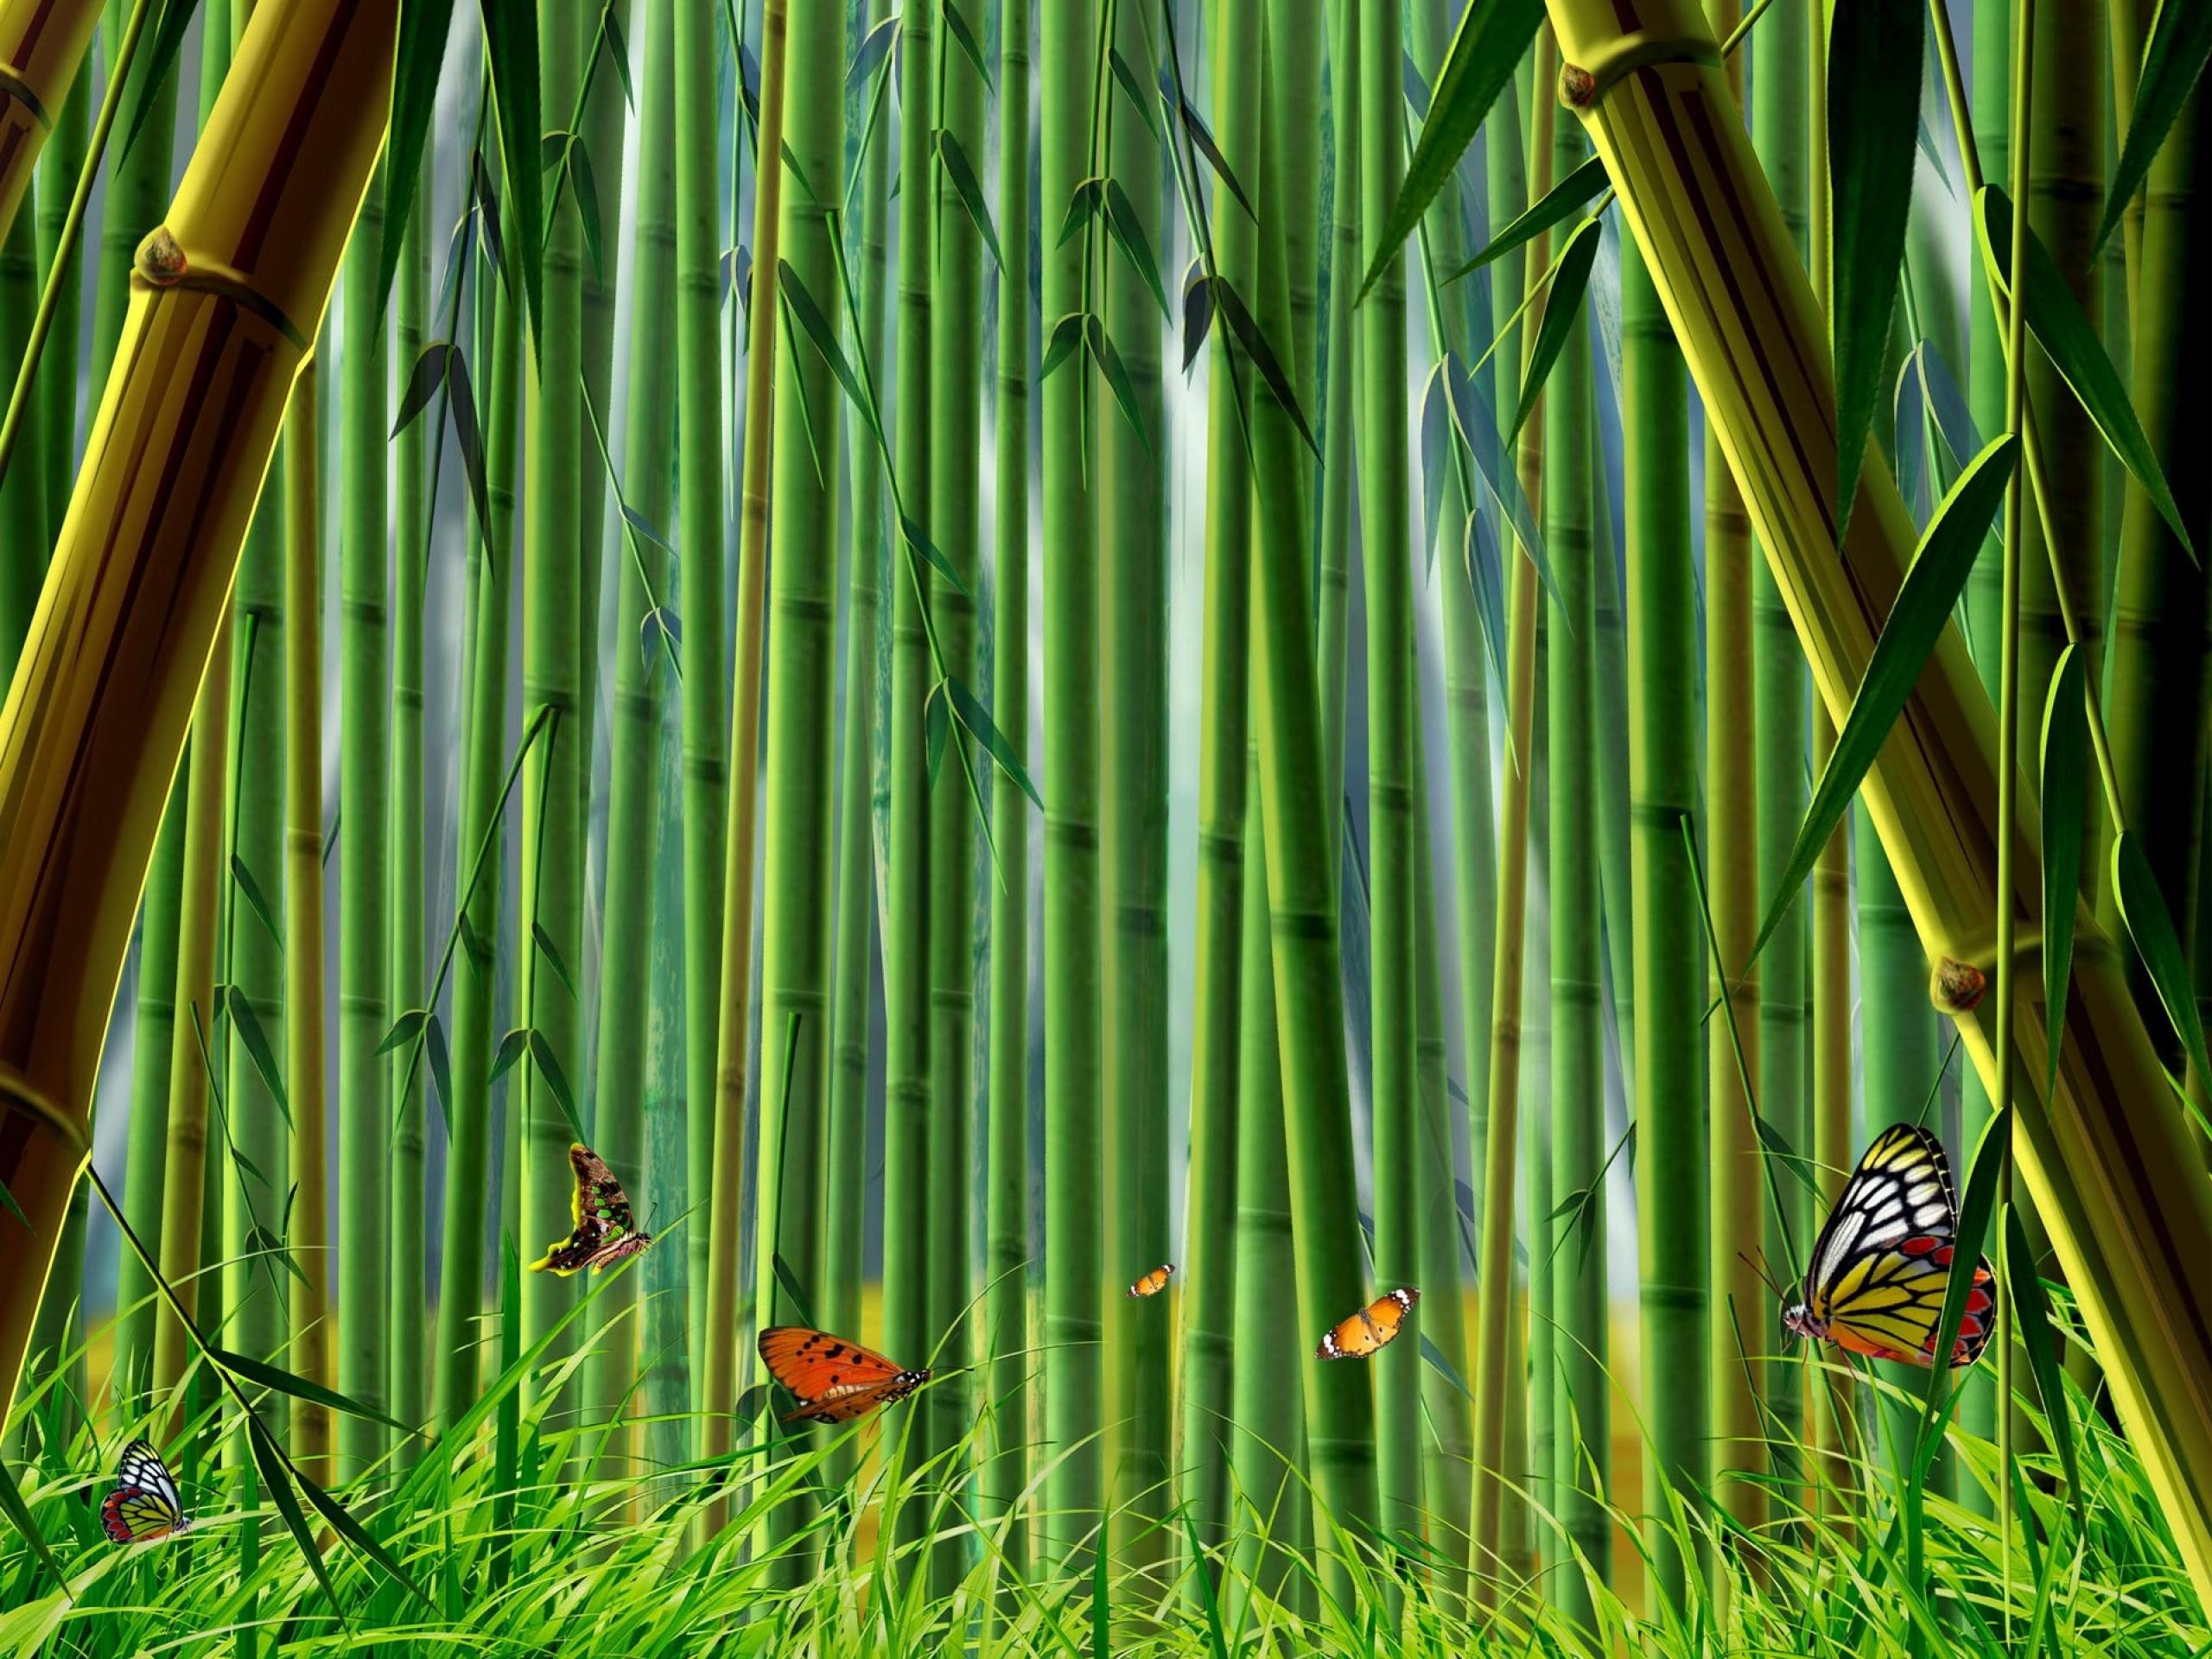 دانلود عکس گرافیکی جنگل های بامبو همراه پروانه های رنگی 